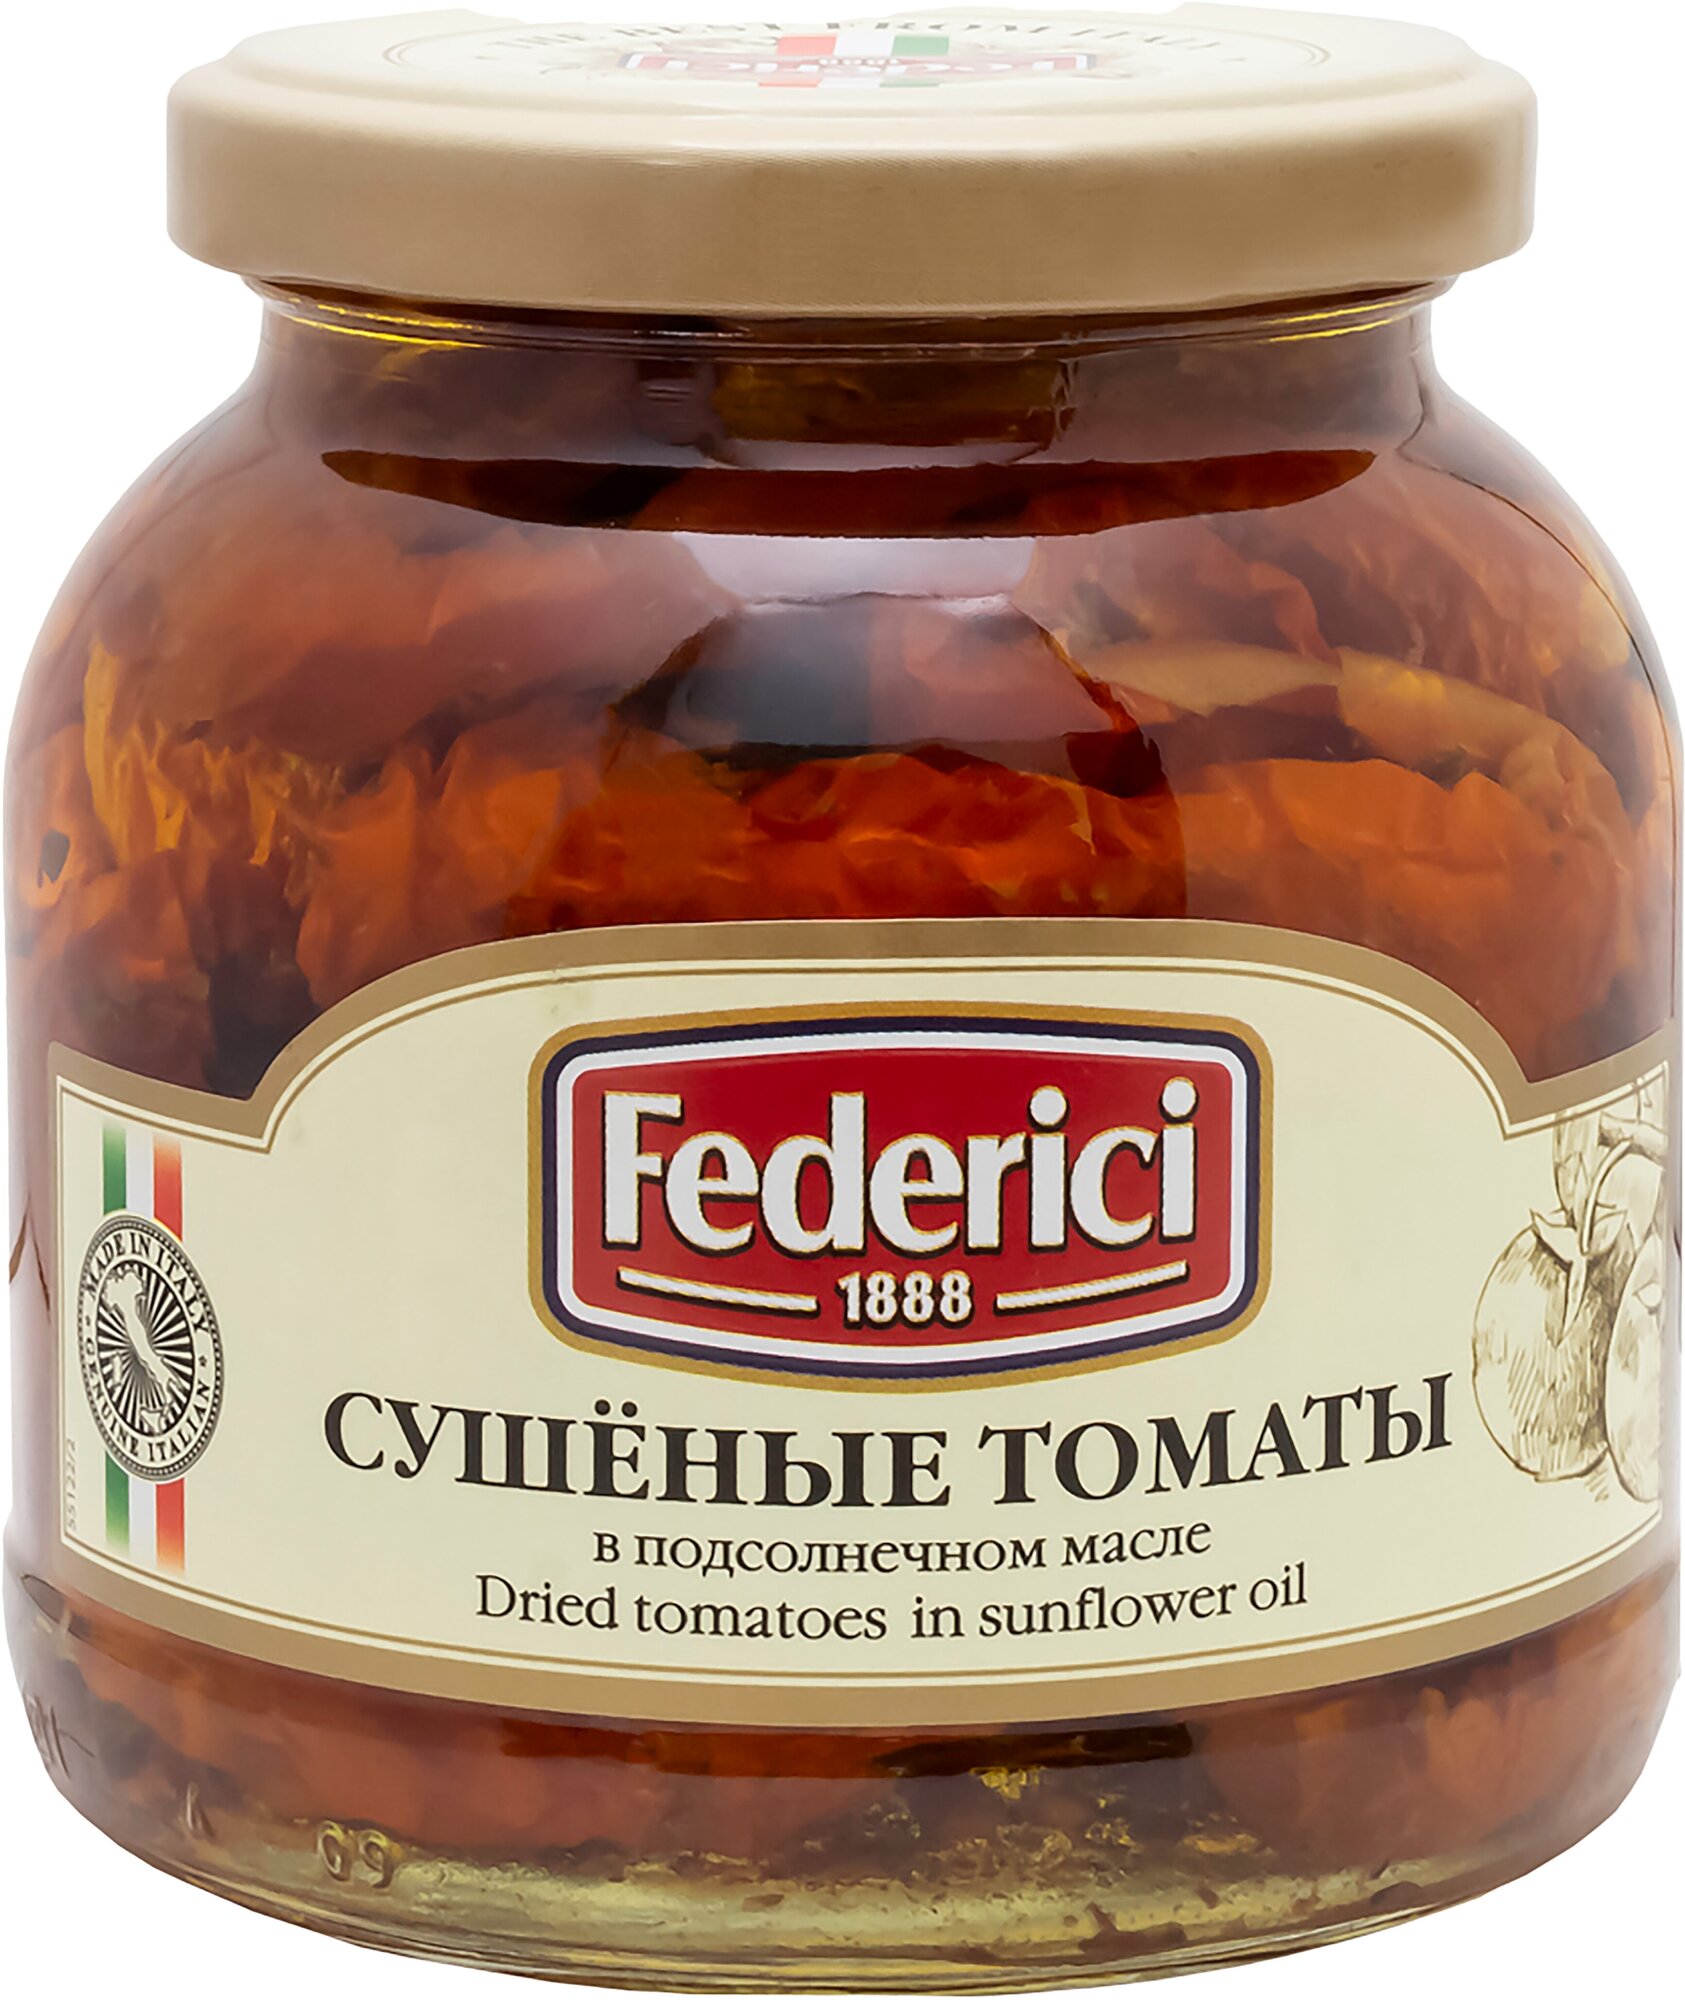 Сушеные томаты Federici в подсолнечном масле, 280 г